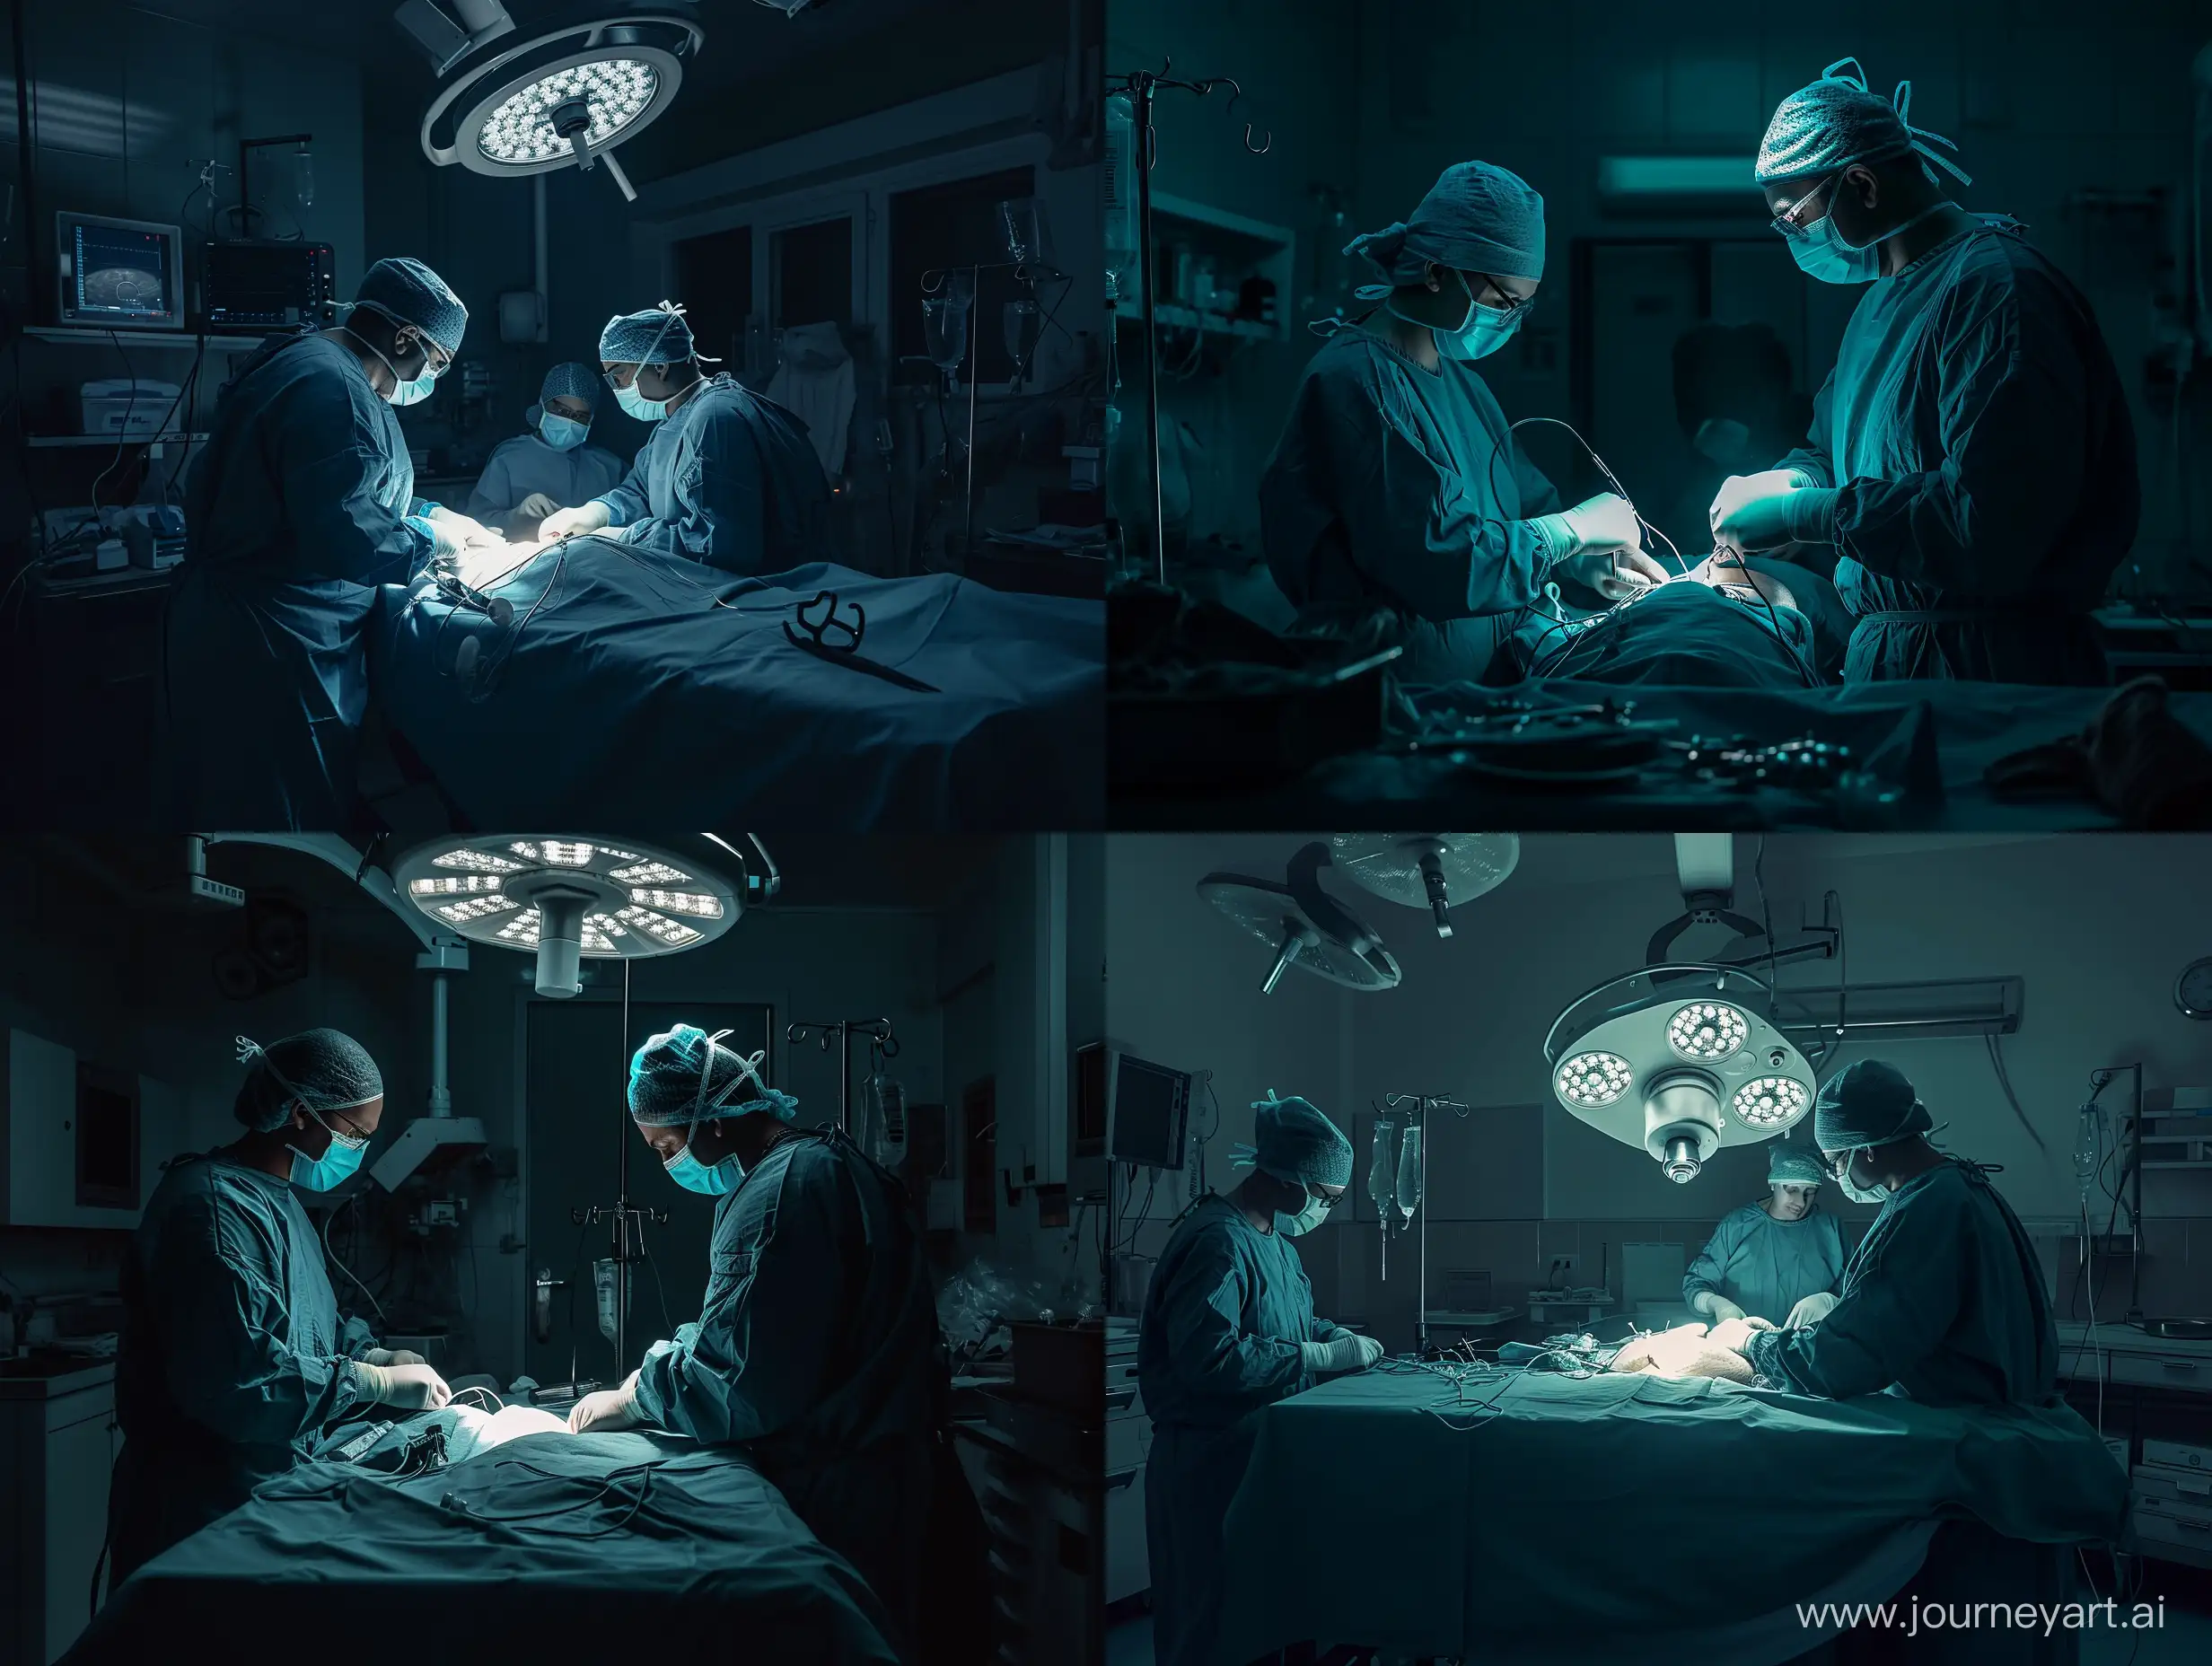 реалистичное фото из темной операционной, где врач и медицинская сестра проводят лапароскопическую операцию по удалению матки, высокая степень детализации.